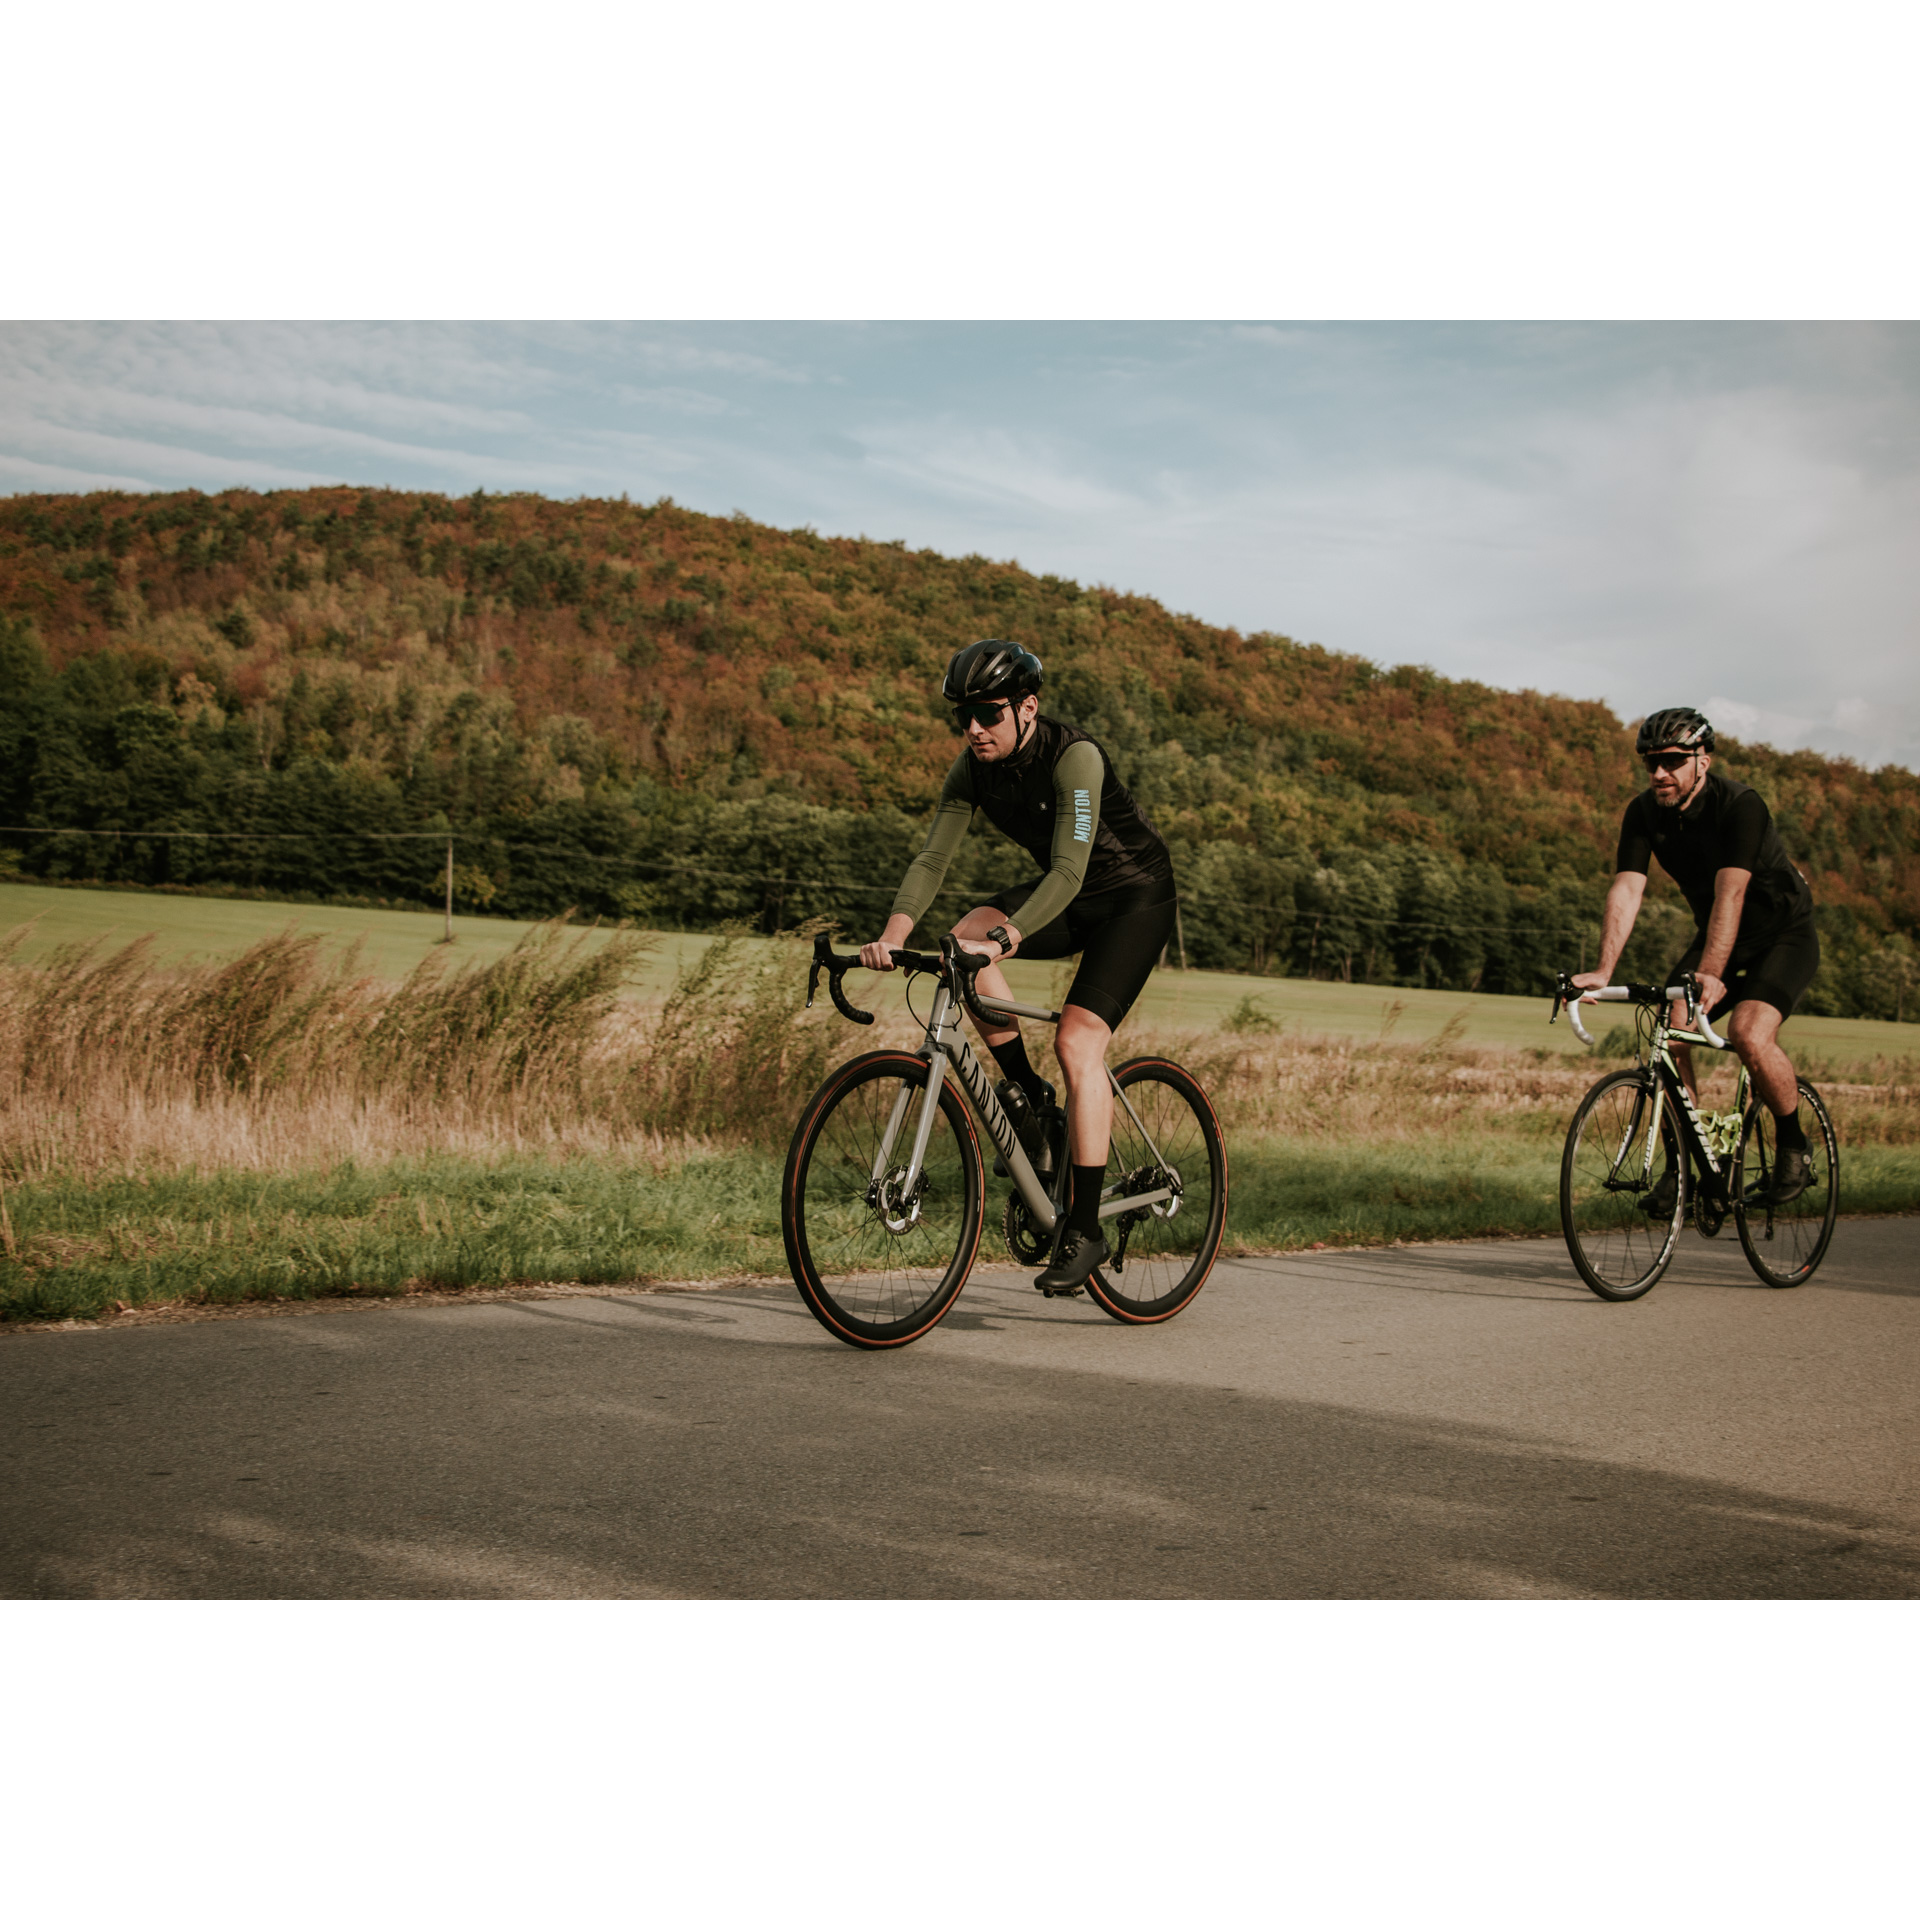 Dwóch rowerzystów w czarnych strojach kolarskich i kaskach jadących po asfaltowej drodze biegnącej wzdłuż łąk, w tle wzgórze porośnięte brązowo-zielonymi drzewami